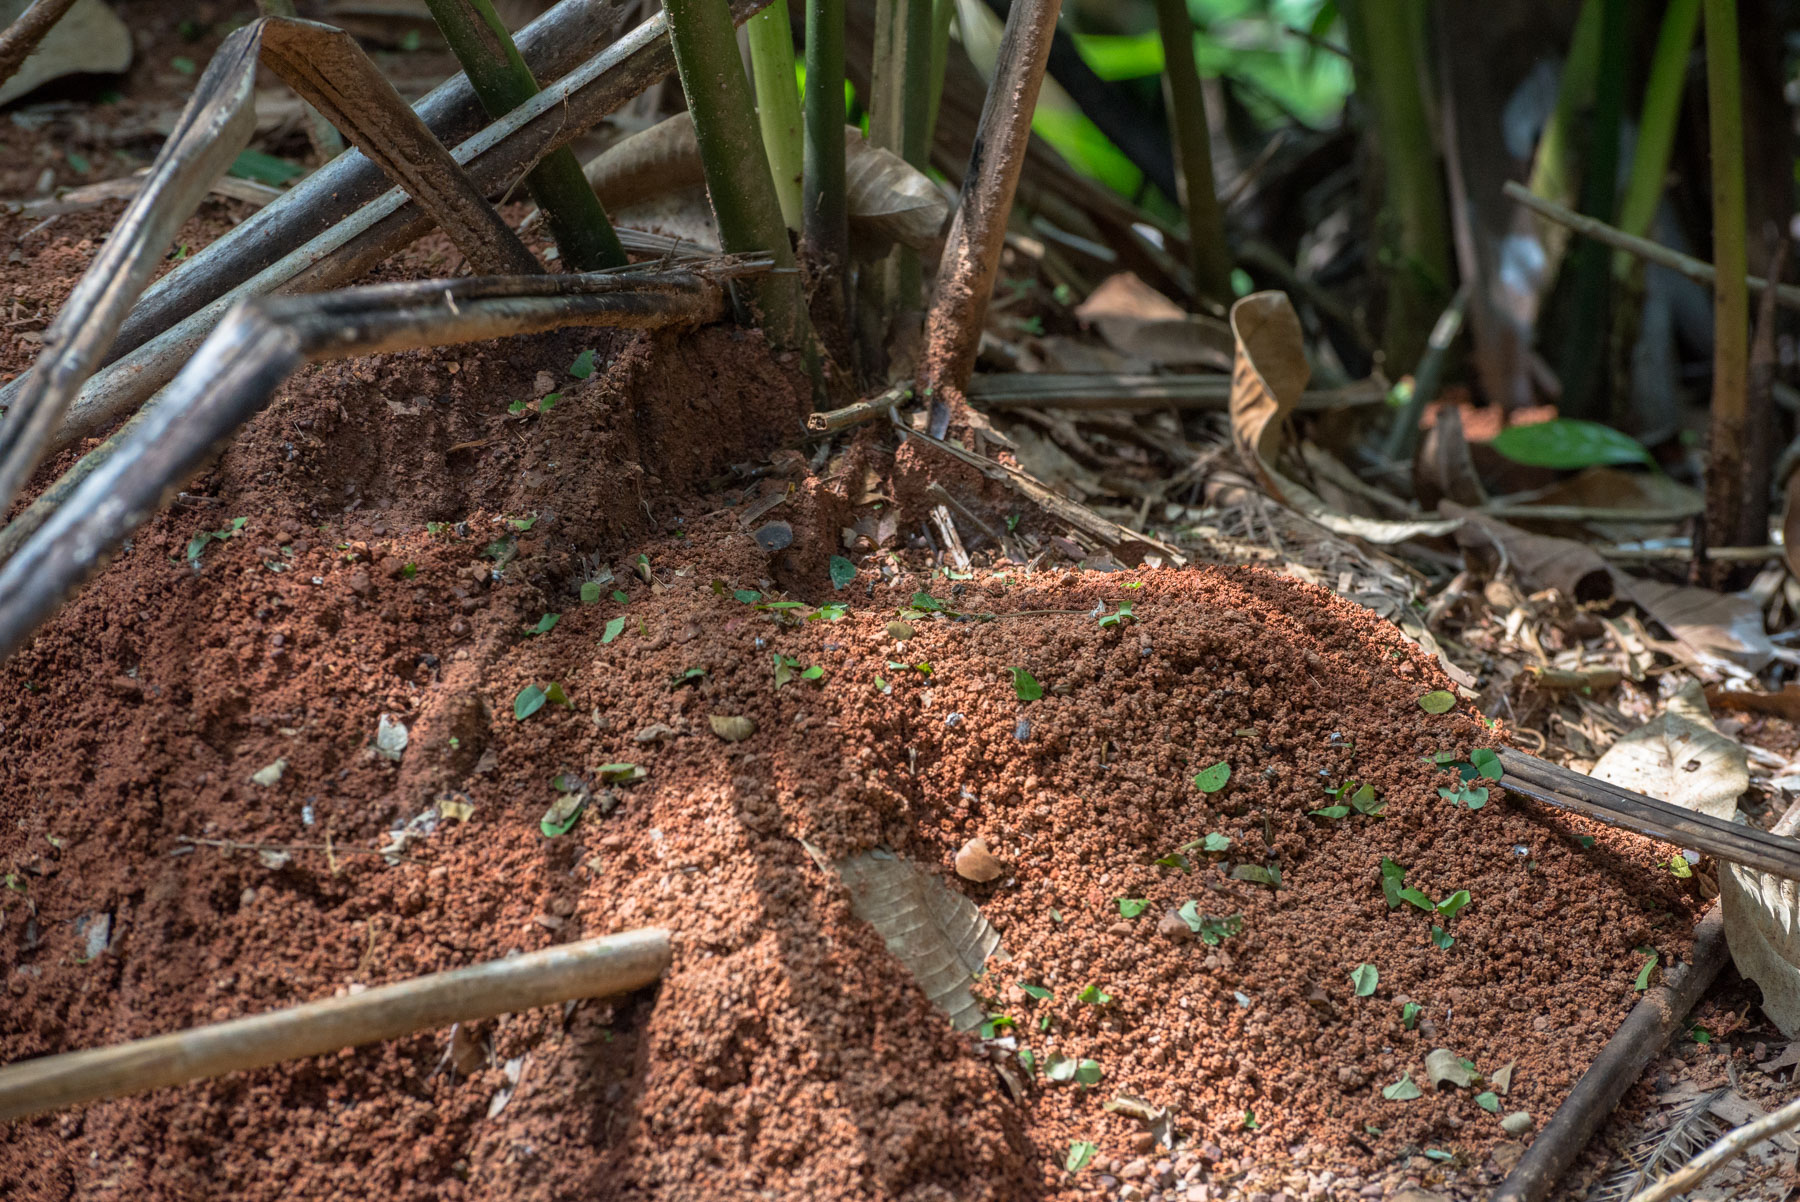 Existe una amplia gama de soluciones que abarcan desde la regeneración natural y la regeneración natural asistida hasta la agroforestería y la siembra activa en proyectos de restauración. Foto: Felipe Villegas.